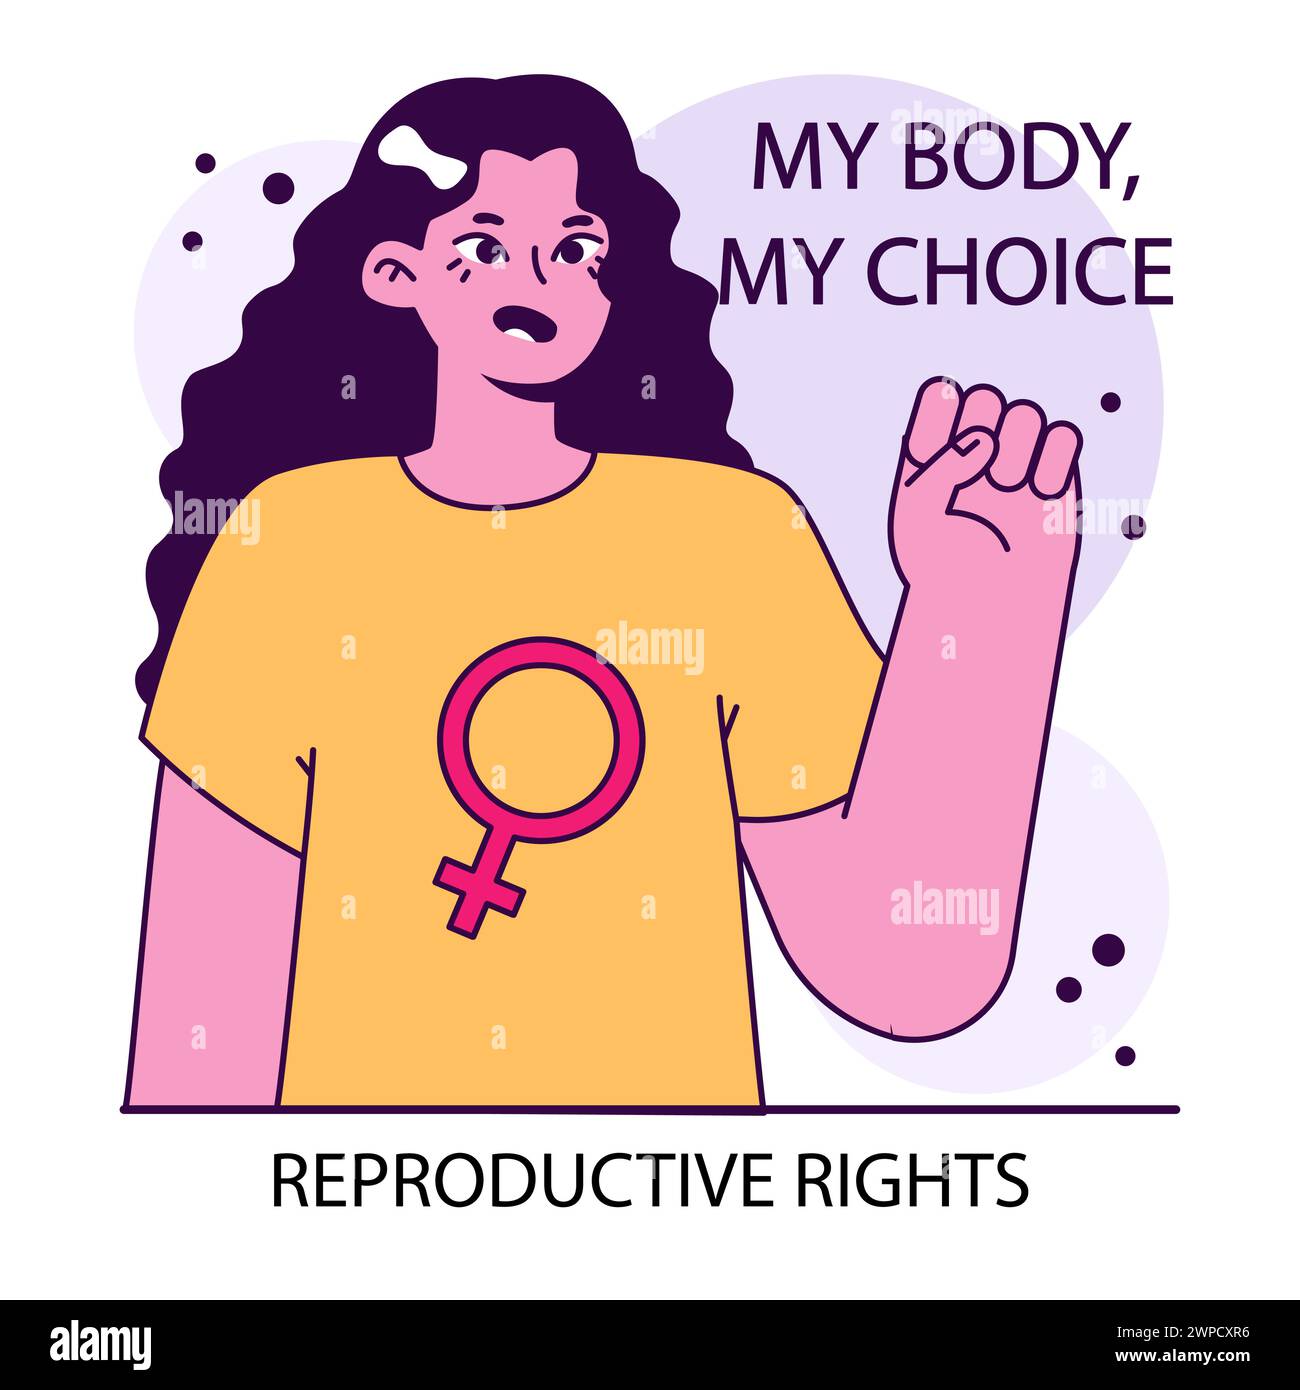 Diritti riproduttivi. Una donna forte e risoluta preannuncia l'importanza dei diritti riproduttivi che danno voce al mio corpo, alla mia scelta. Autonomia corporea. Illustrazione vettoriale piatta. Illustrazione Vettoriale